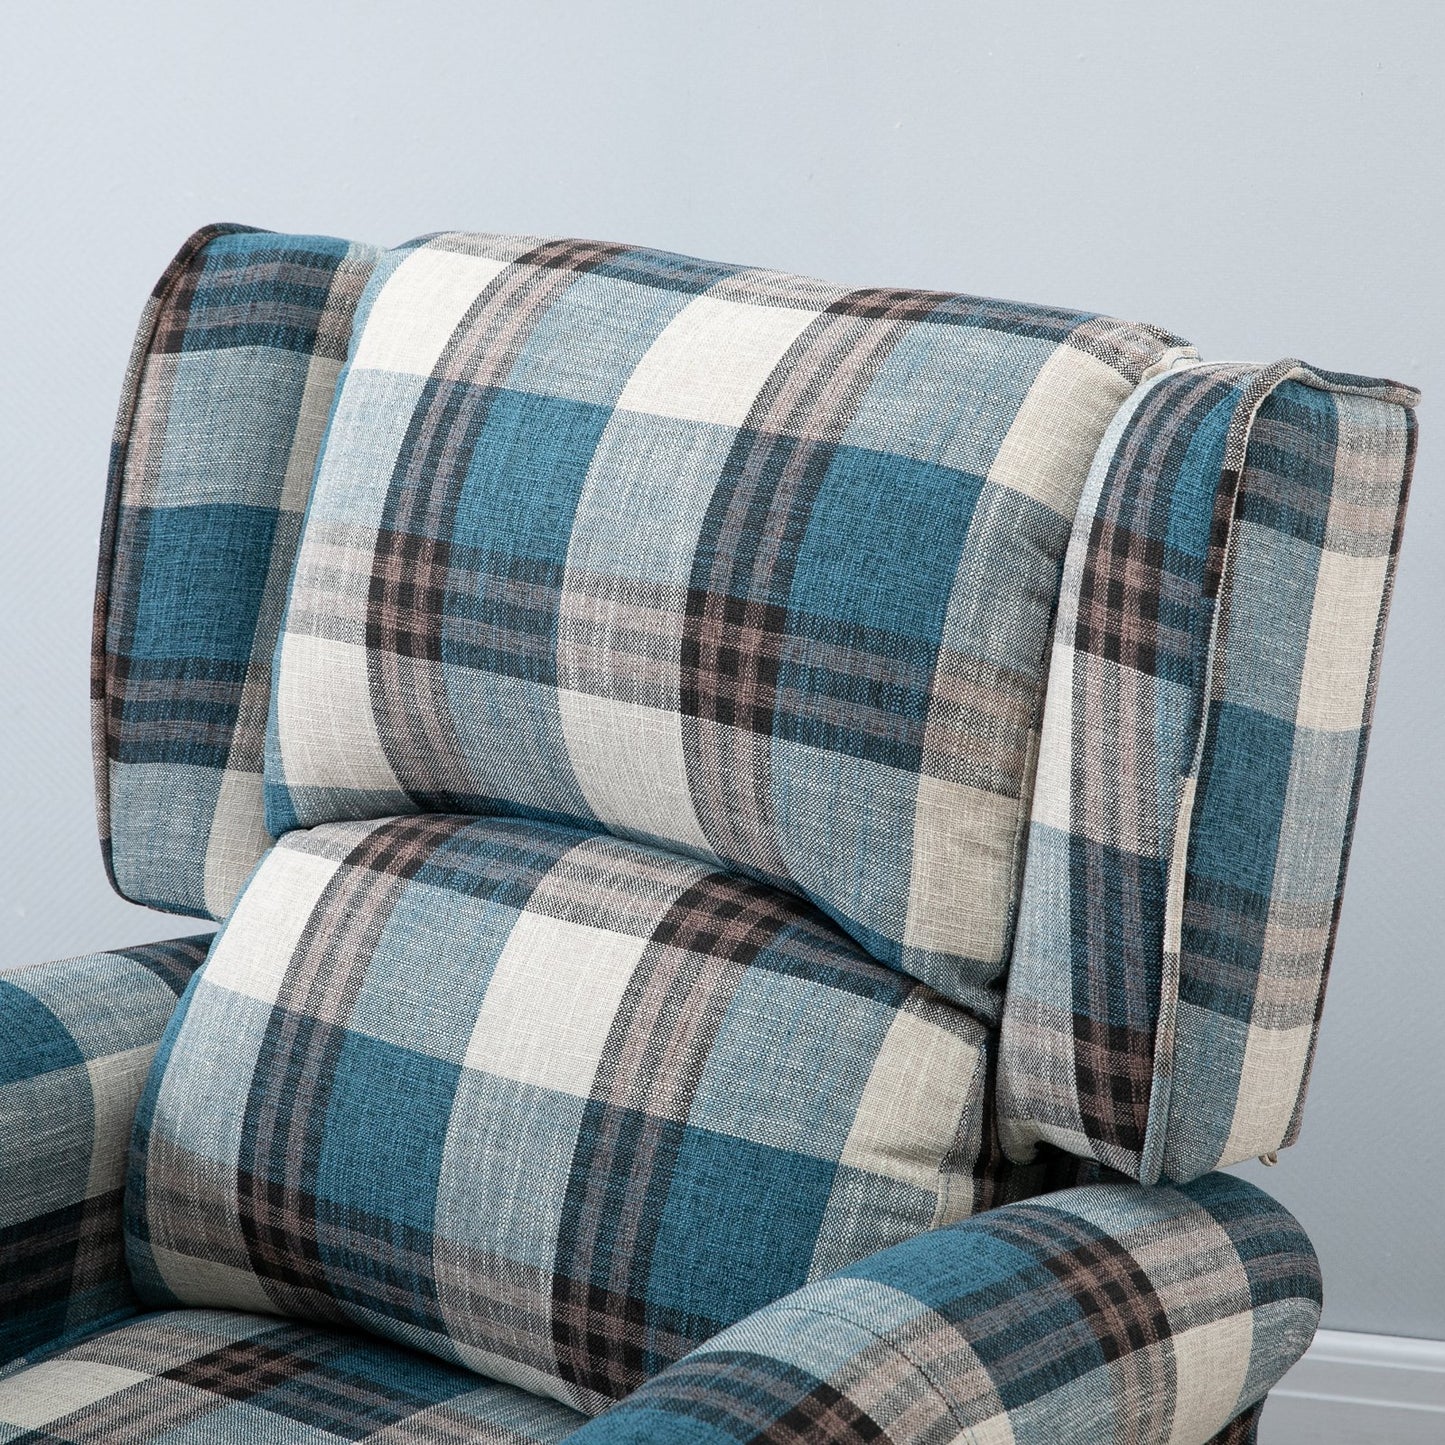 HOMCOM Plush Single Sofa Chair Recliner Armchair Checked Blue